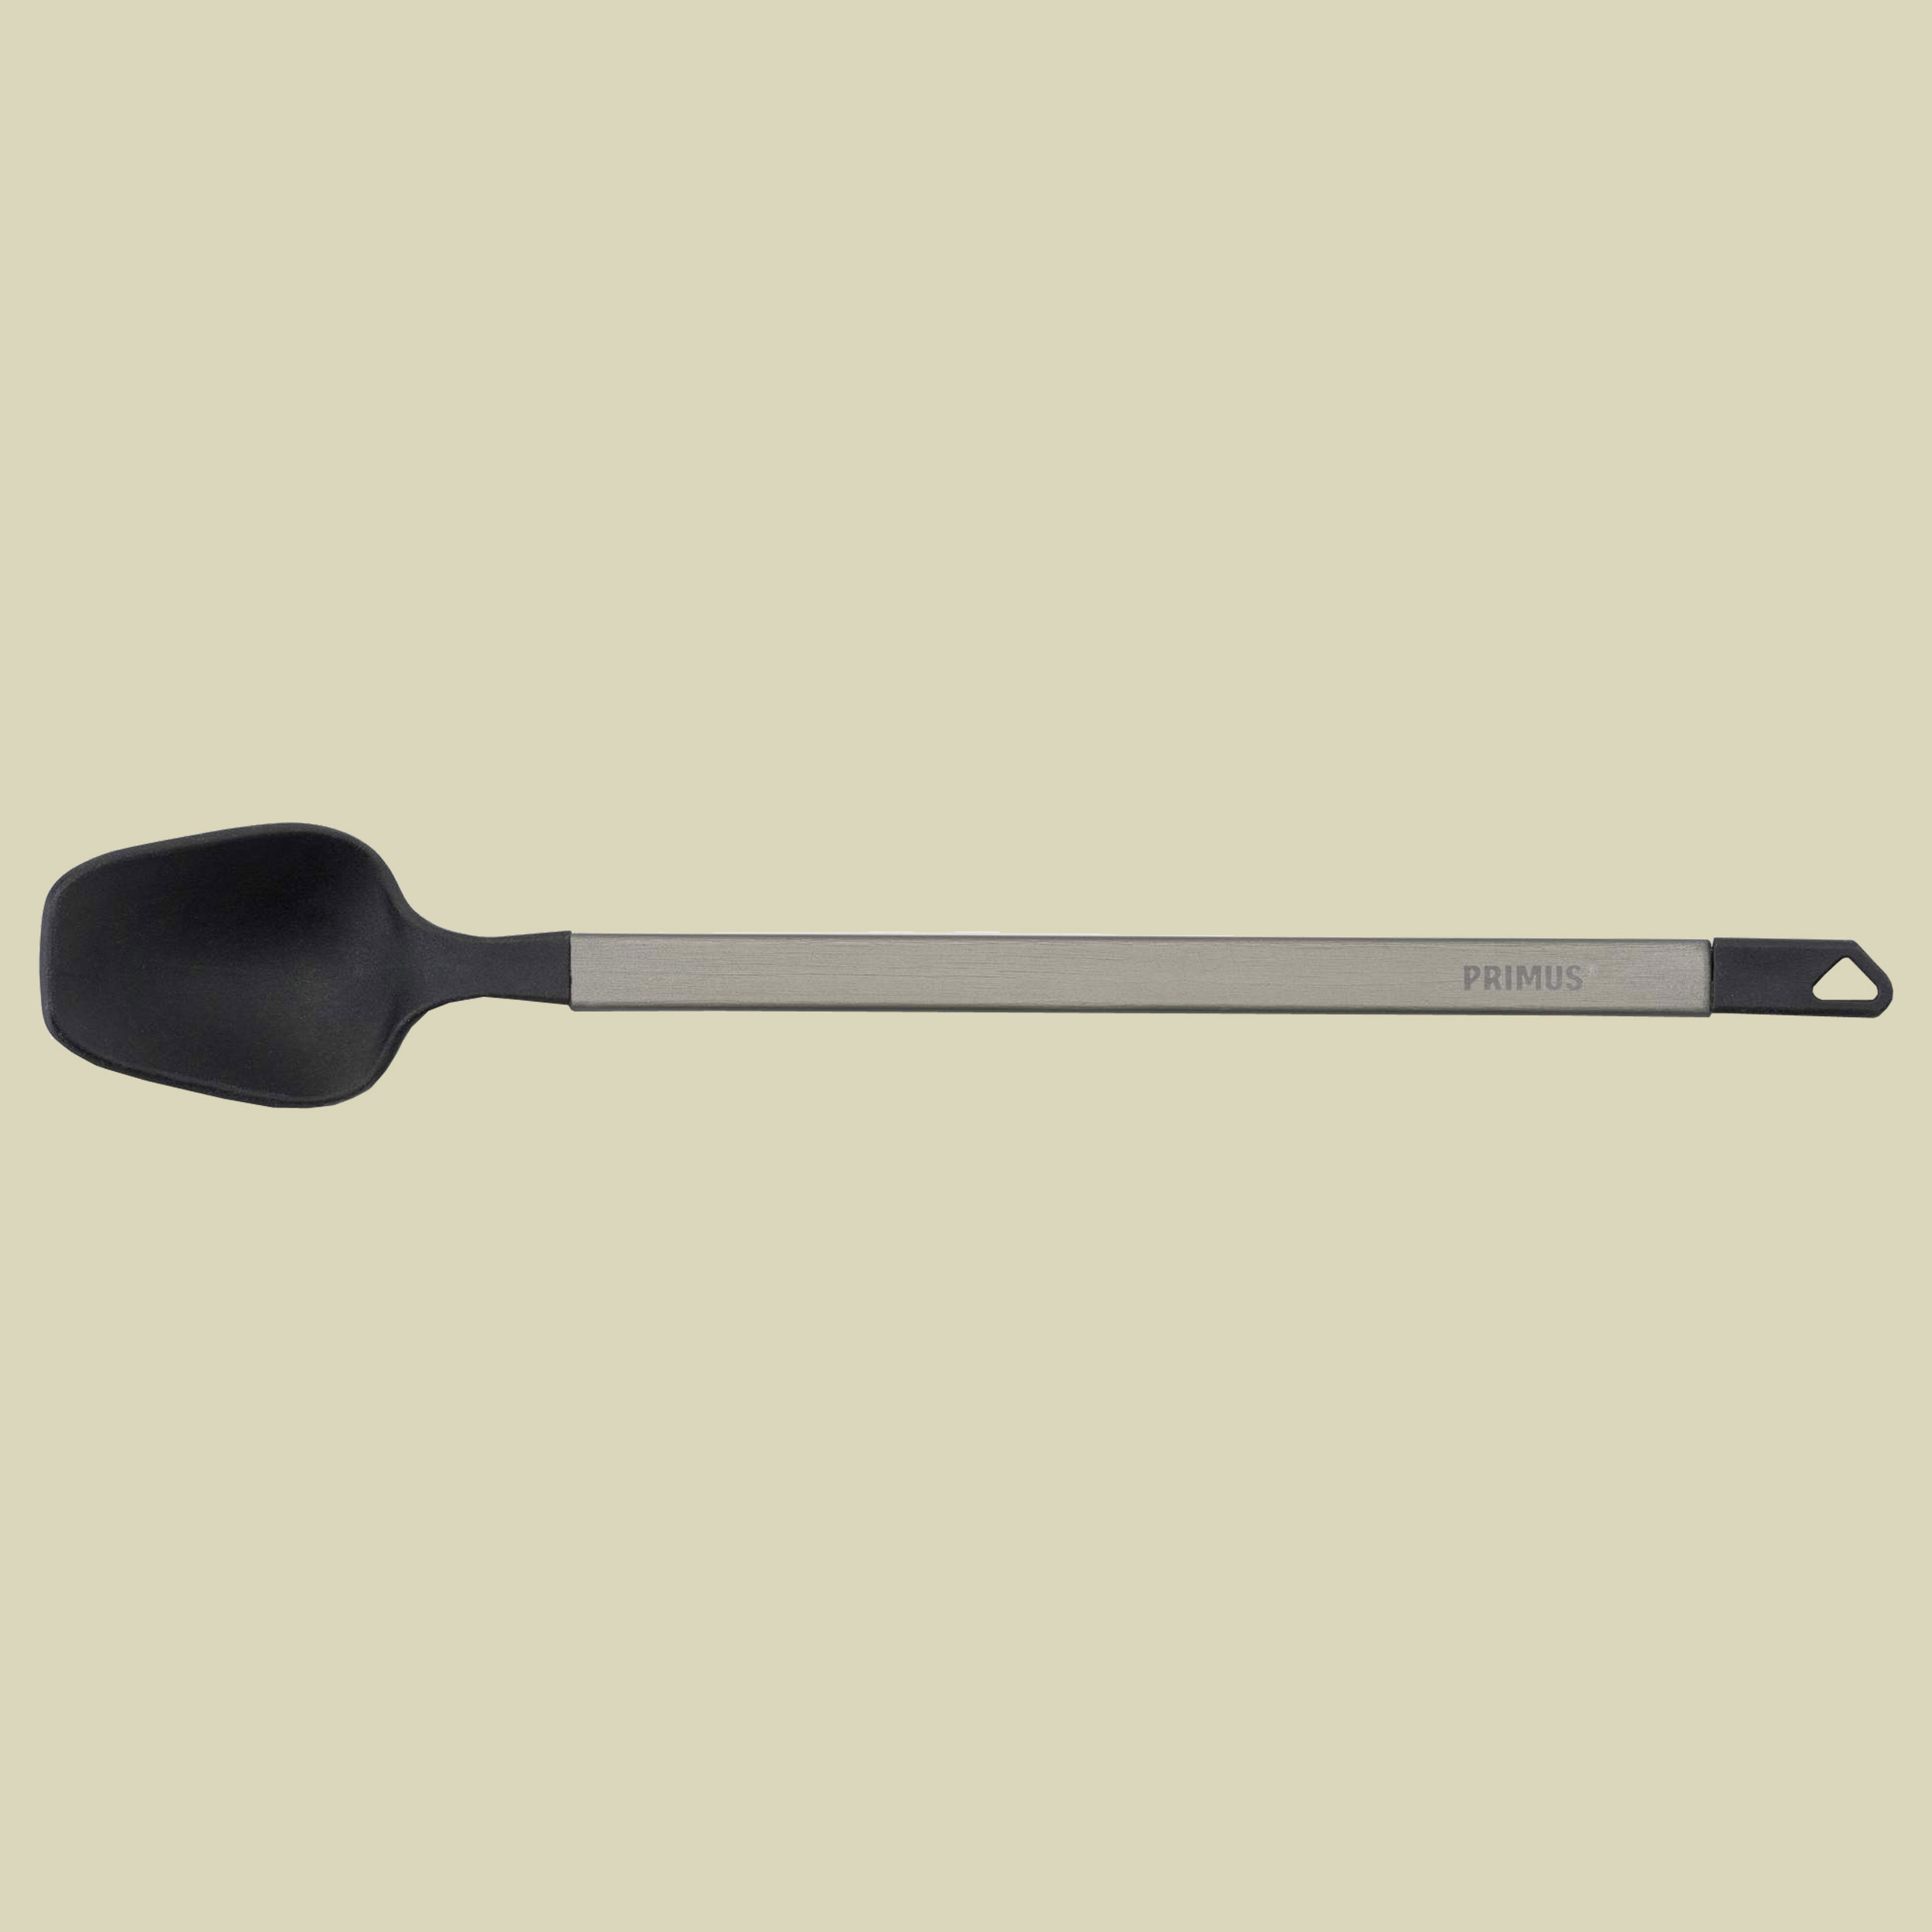 Longspoon Größe one size Farbe black